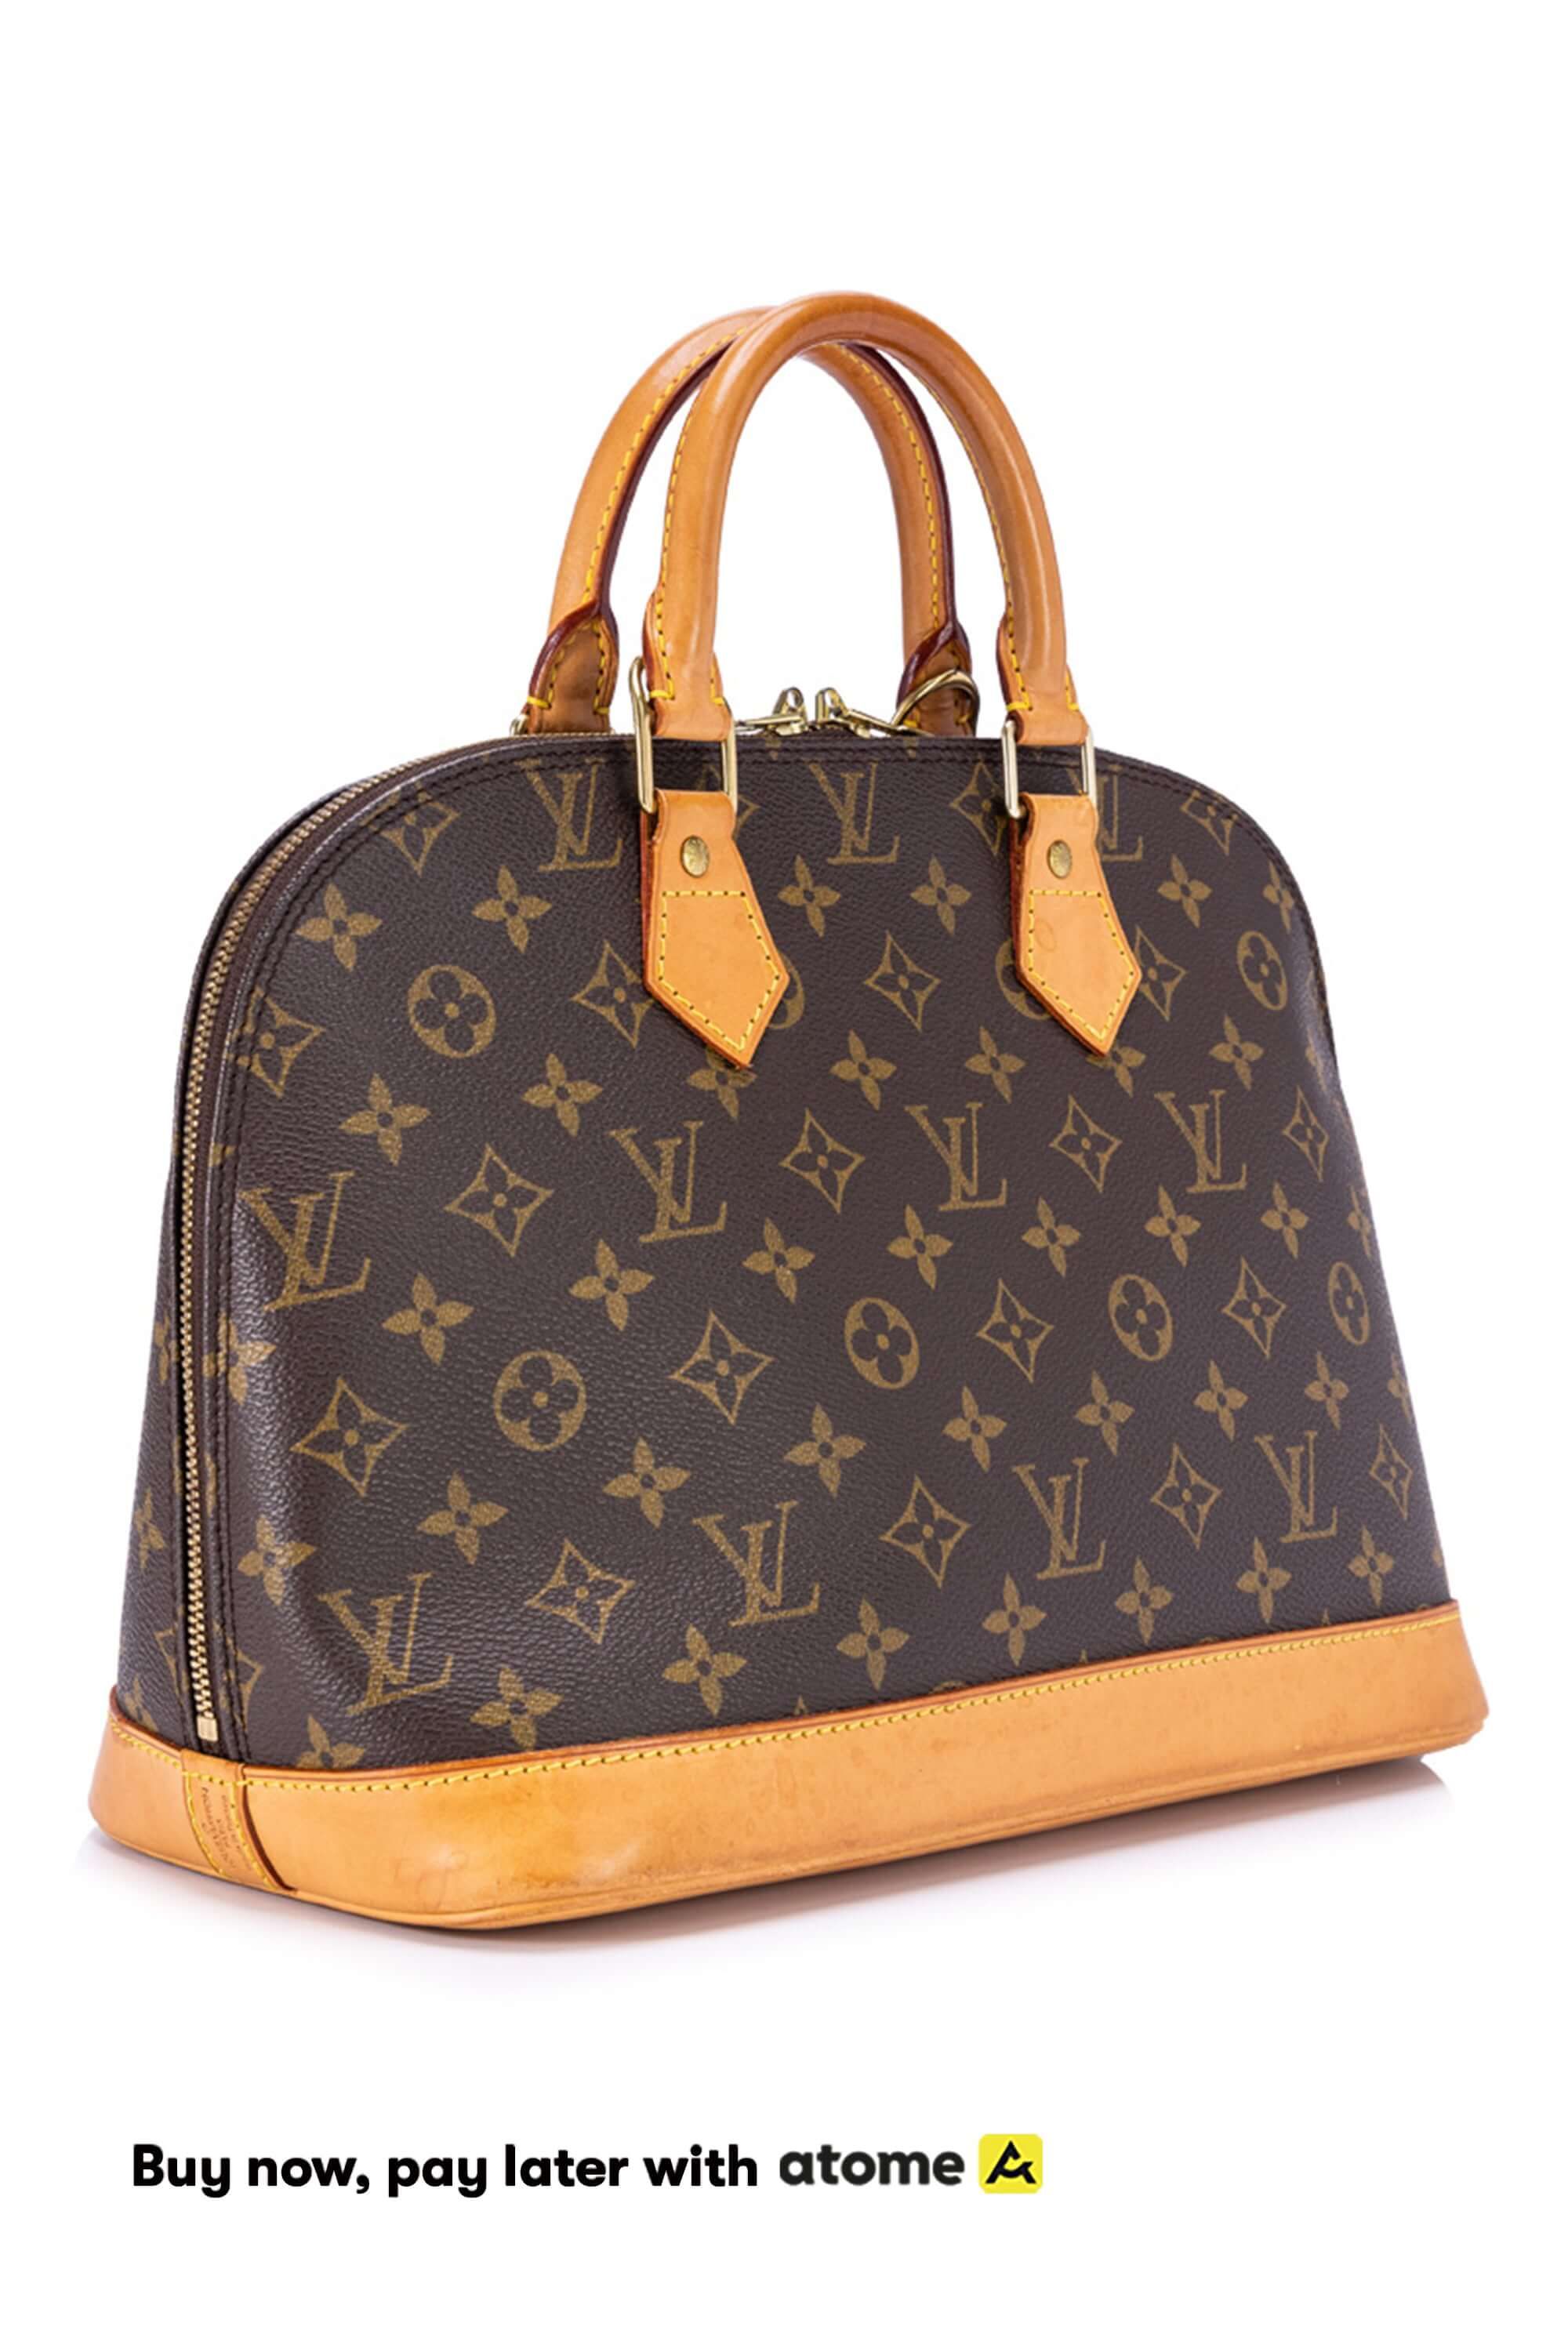 Louis Vuitton, Bags, Louis Vuitton Alma Handbagauthentic